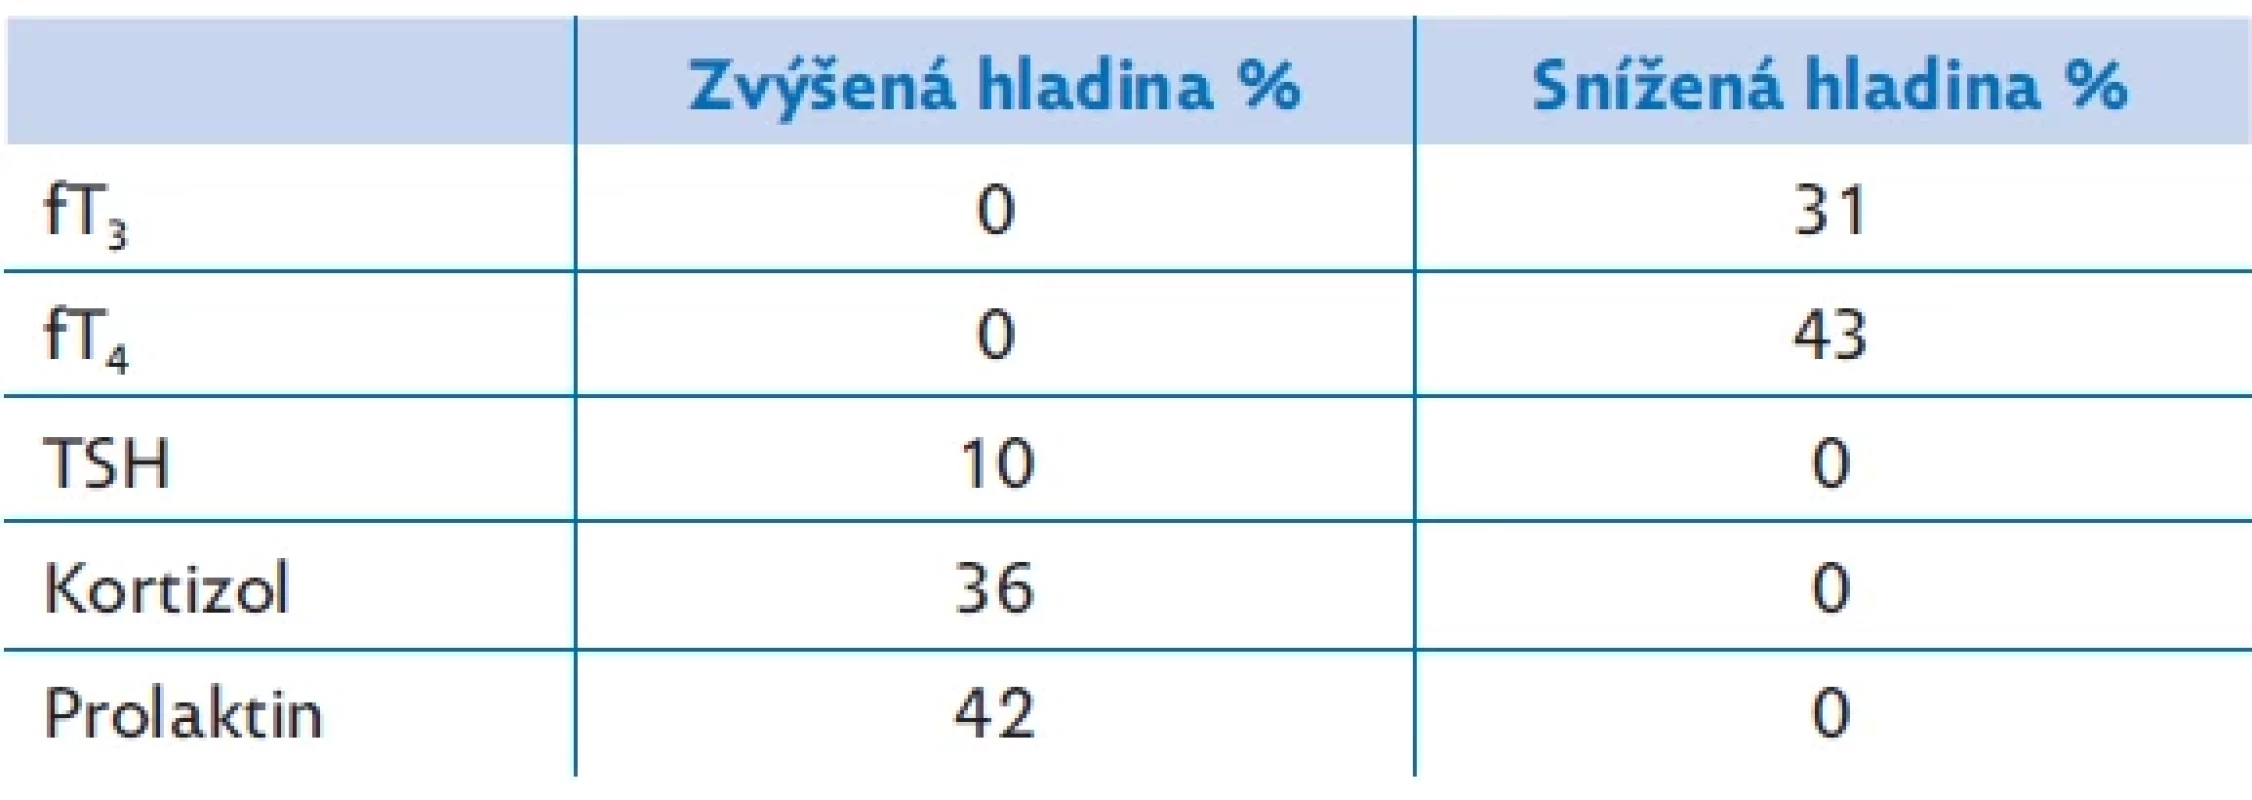 Výsledky základního hormonálního vyšetření 106 pacientů FN Brno